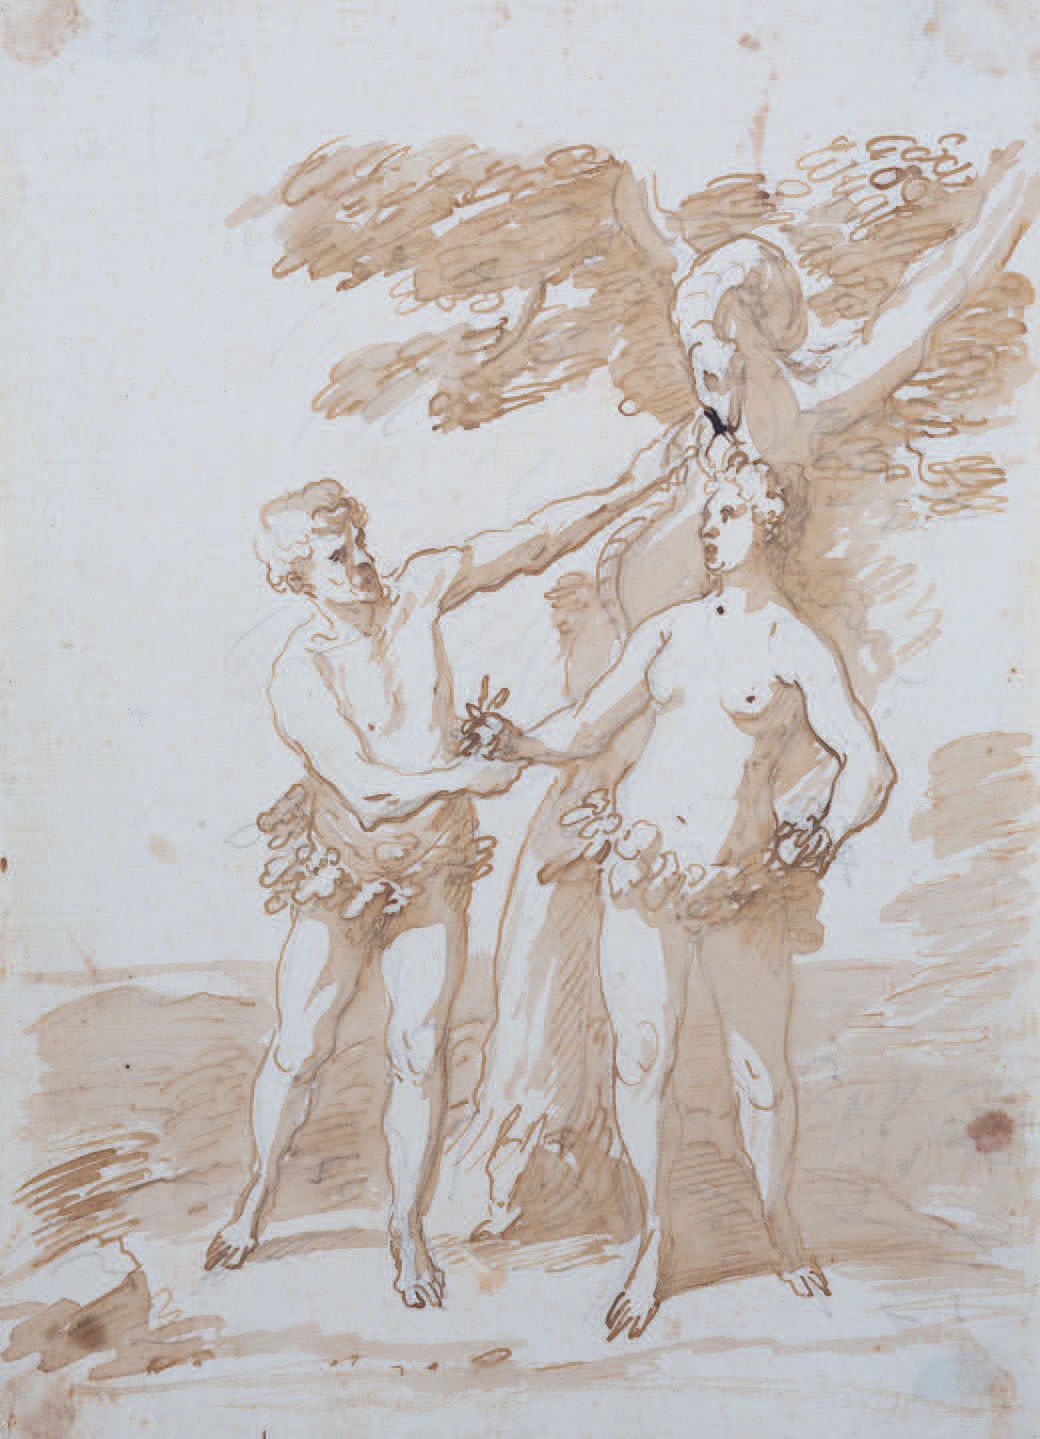 Scuola Italiana del XVII/XVIII secolo 
Adán y Eva
Pluma, tinta marrón, aguada ma&hellip;